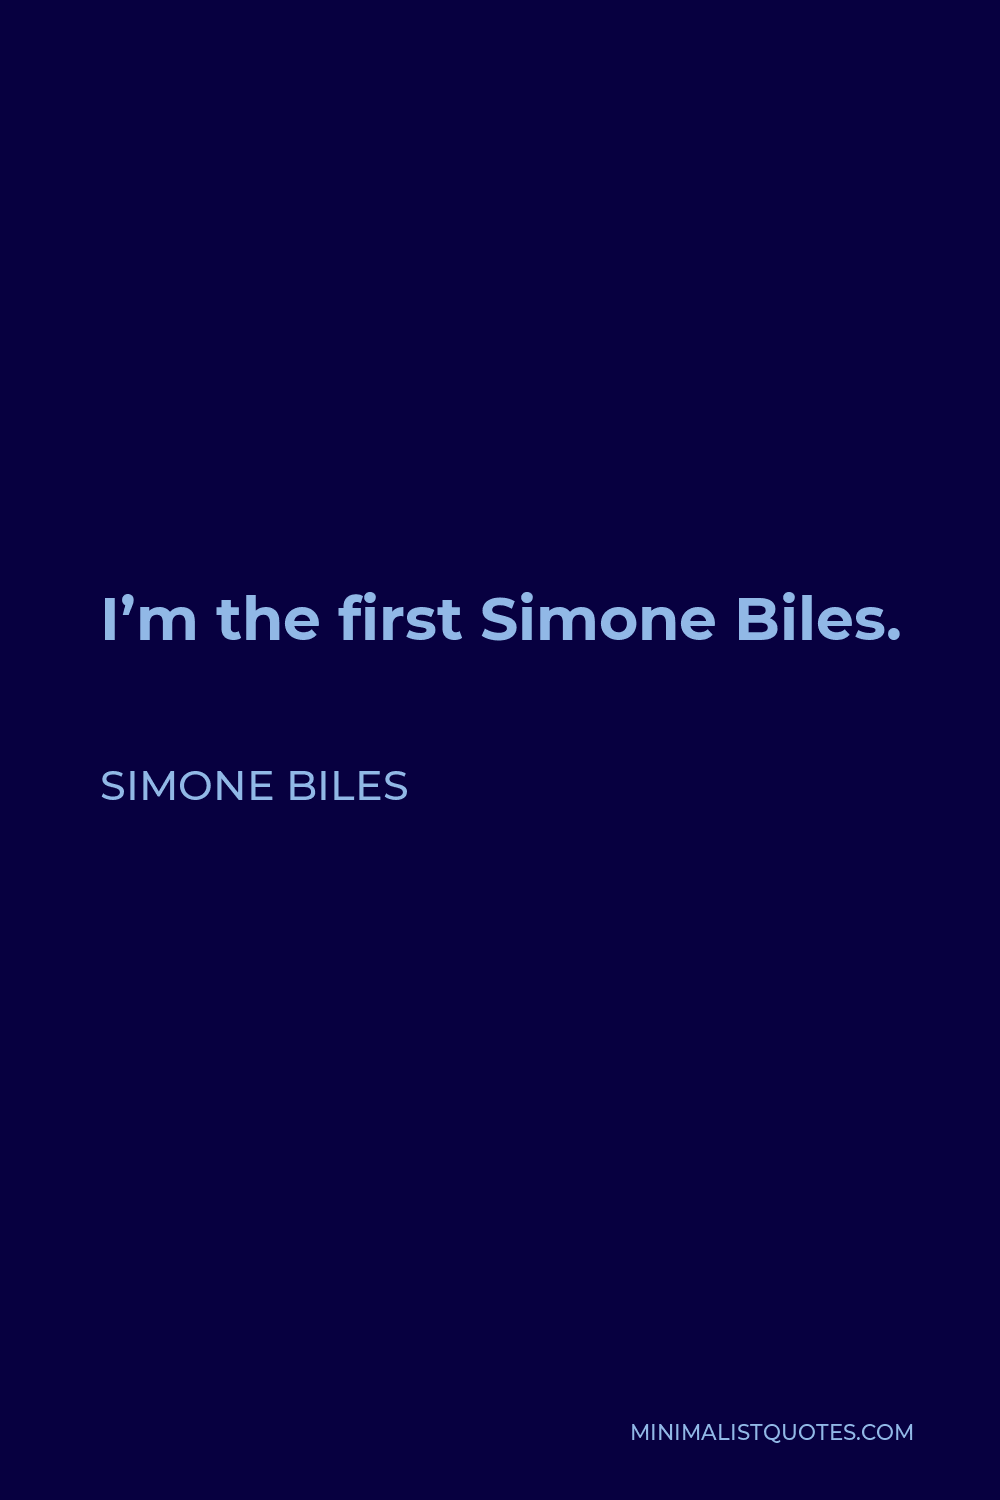 Simone Biles Quote - I’m the first Simone Biles.